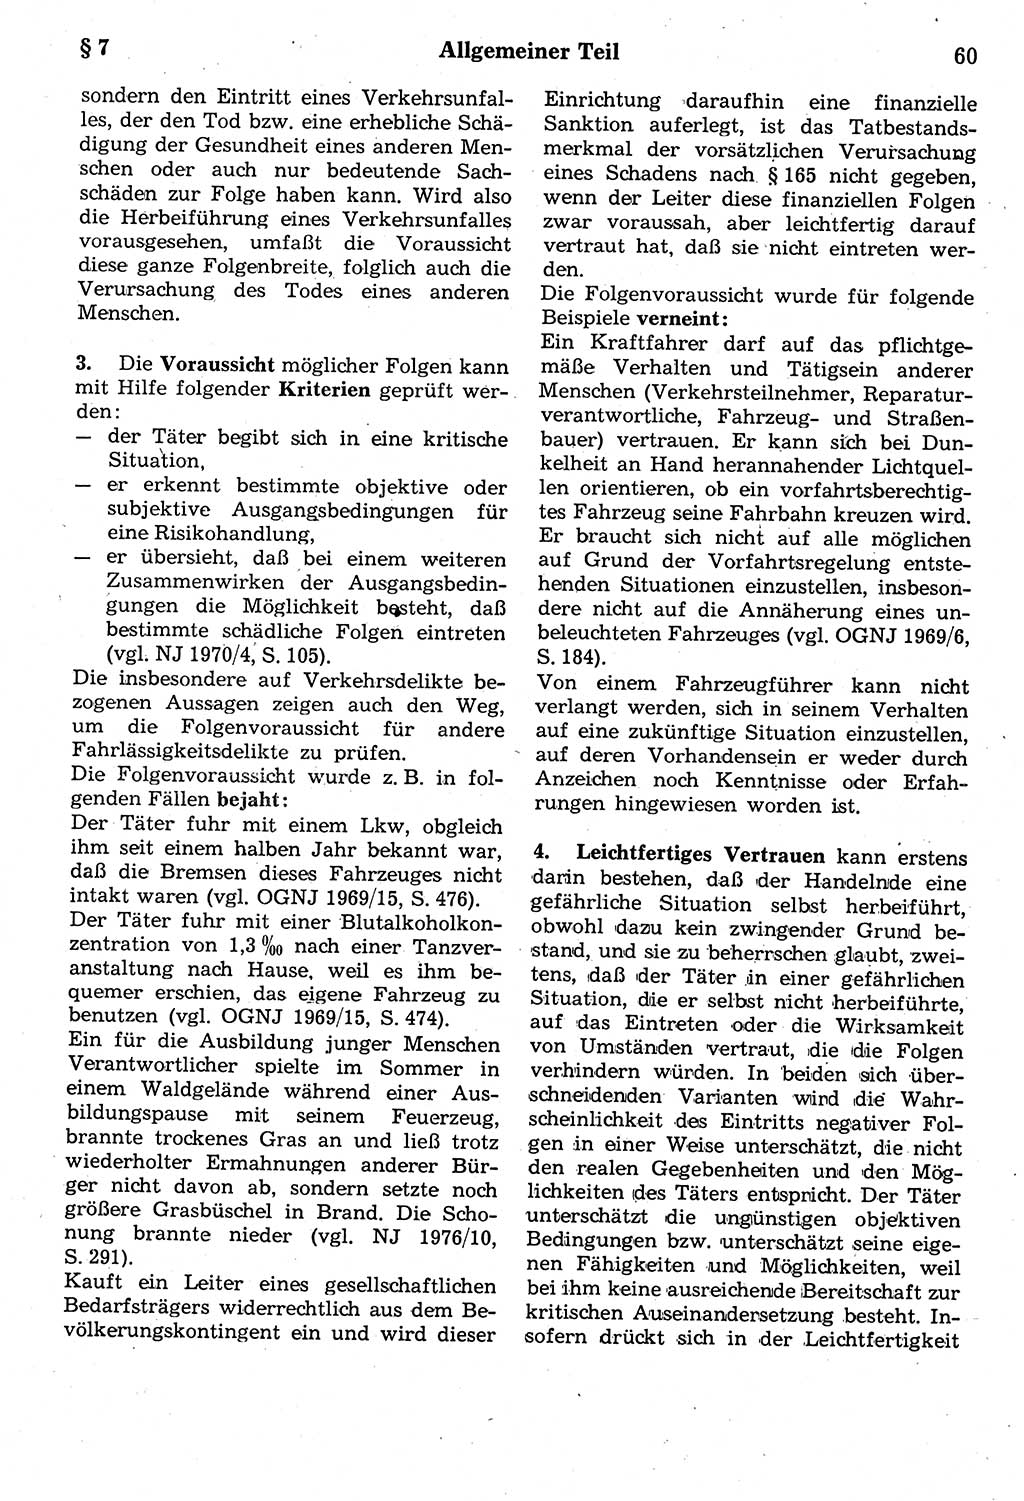 Strafrecht der Deutschen Demokratischen Republik (DDR), Kommentar zum Strafgesetzbuch (StGB) 1987, Seite 60 (Strafr. DDR Komm. StGB 1987, S. 60)